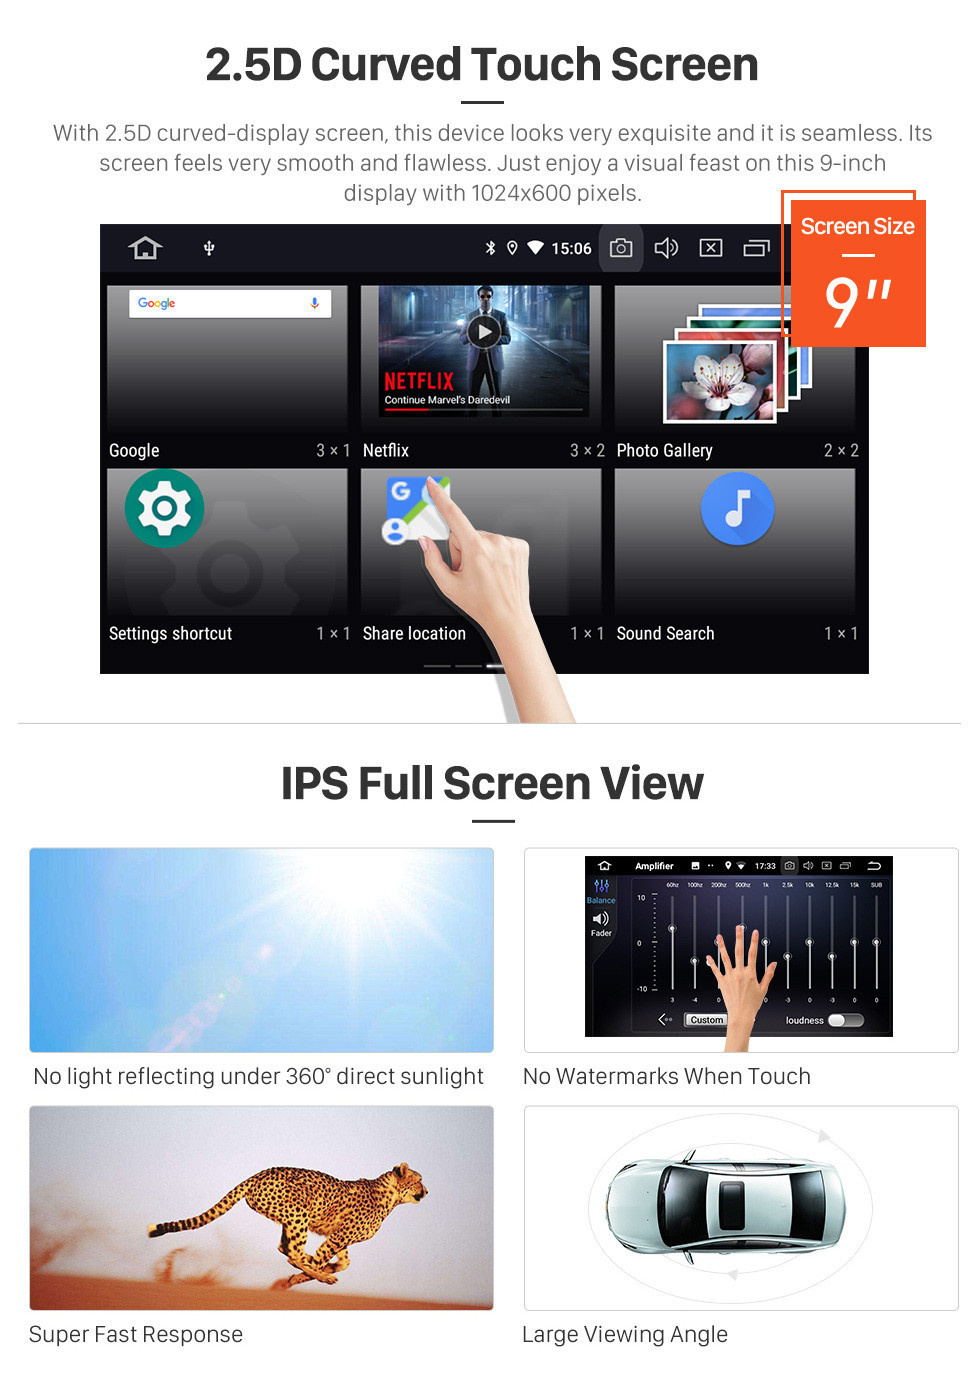 Seicane 9-дюймовый Android 11.0 GPS-навигатор для Hyundai i20 LHD с сенсорным экраном HD Carplay Bluetooth WIFI AUX с поддержкой TPMS Digital TV